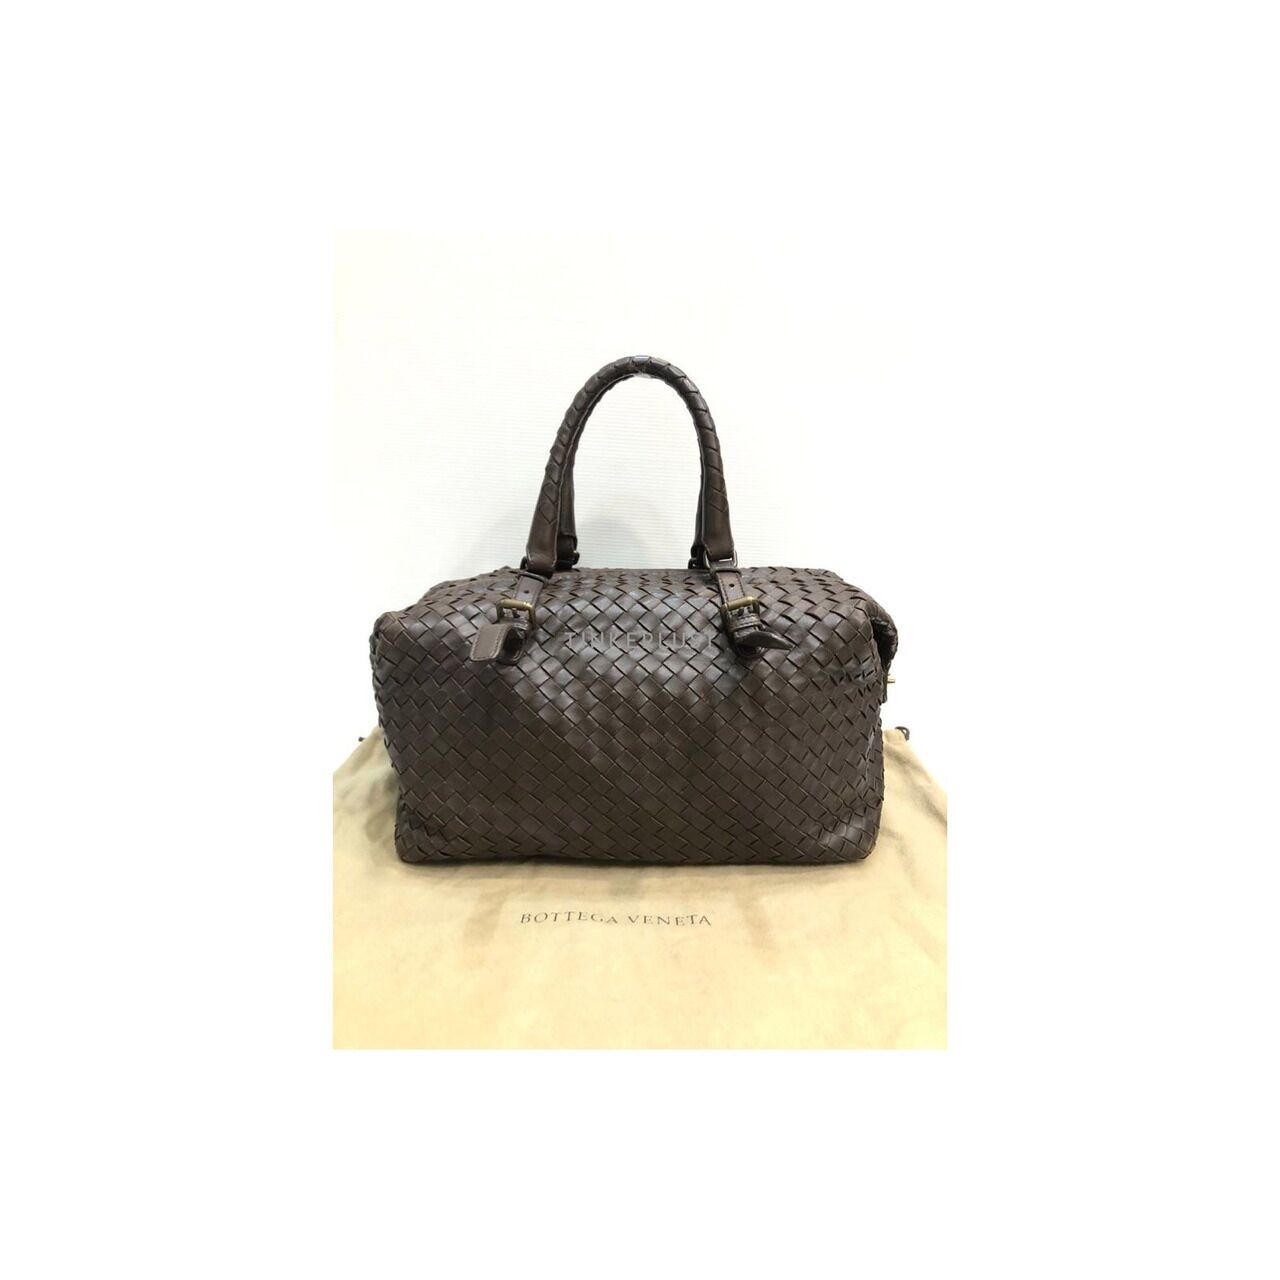 Bottega Veneta Intrecciato Leather Brown Handbag